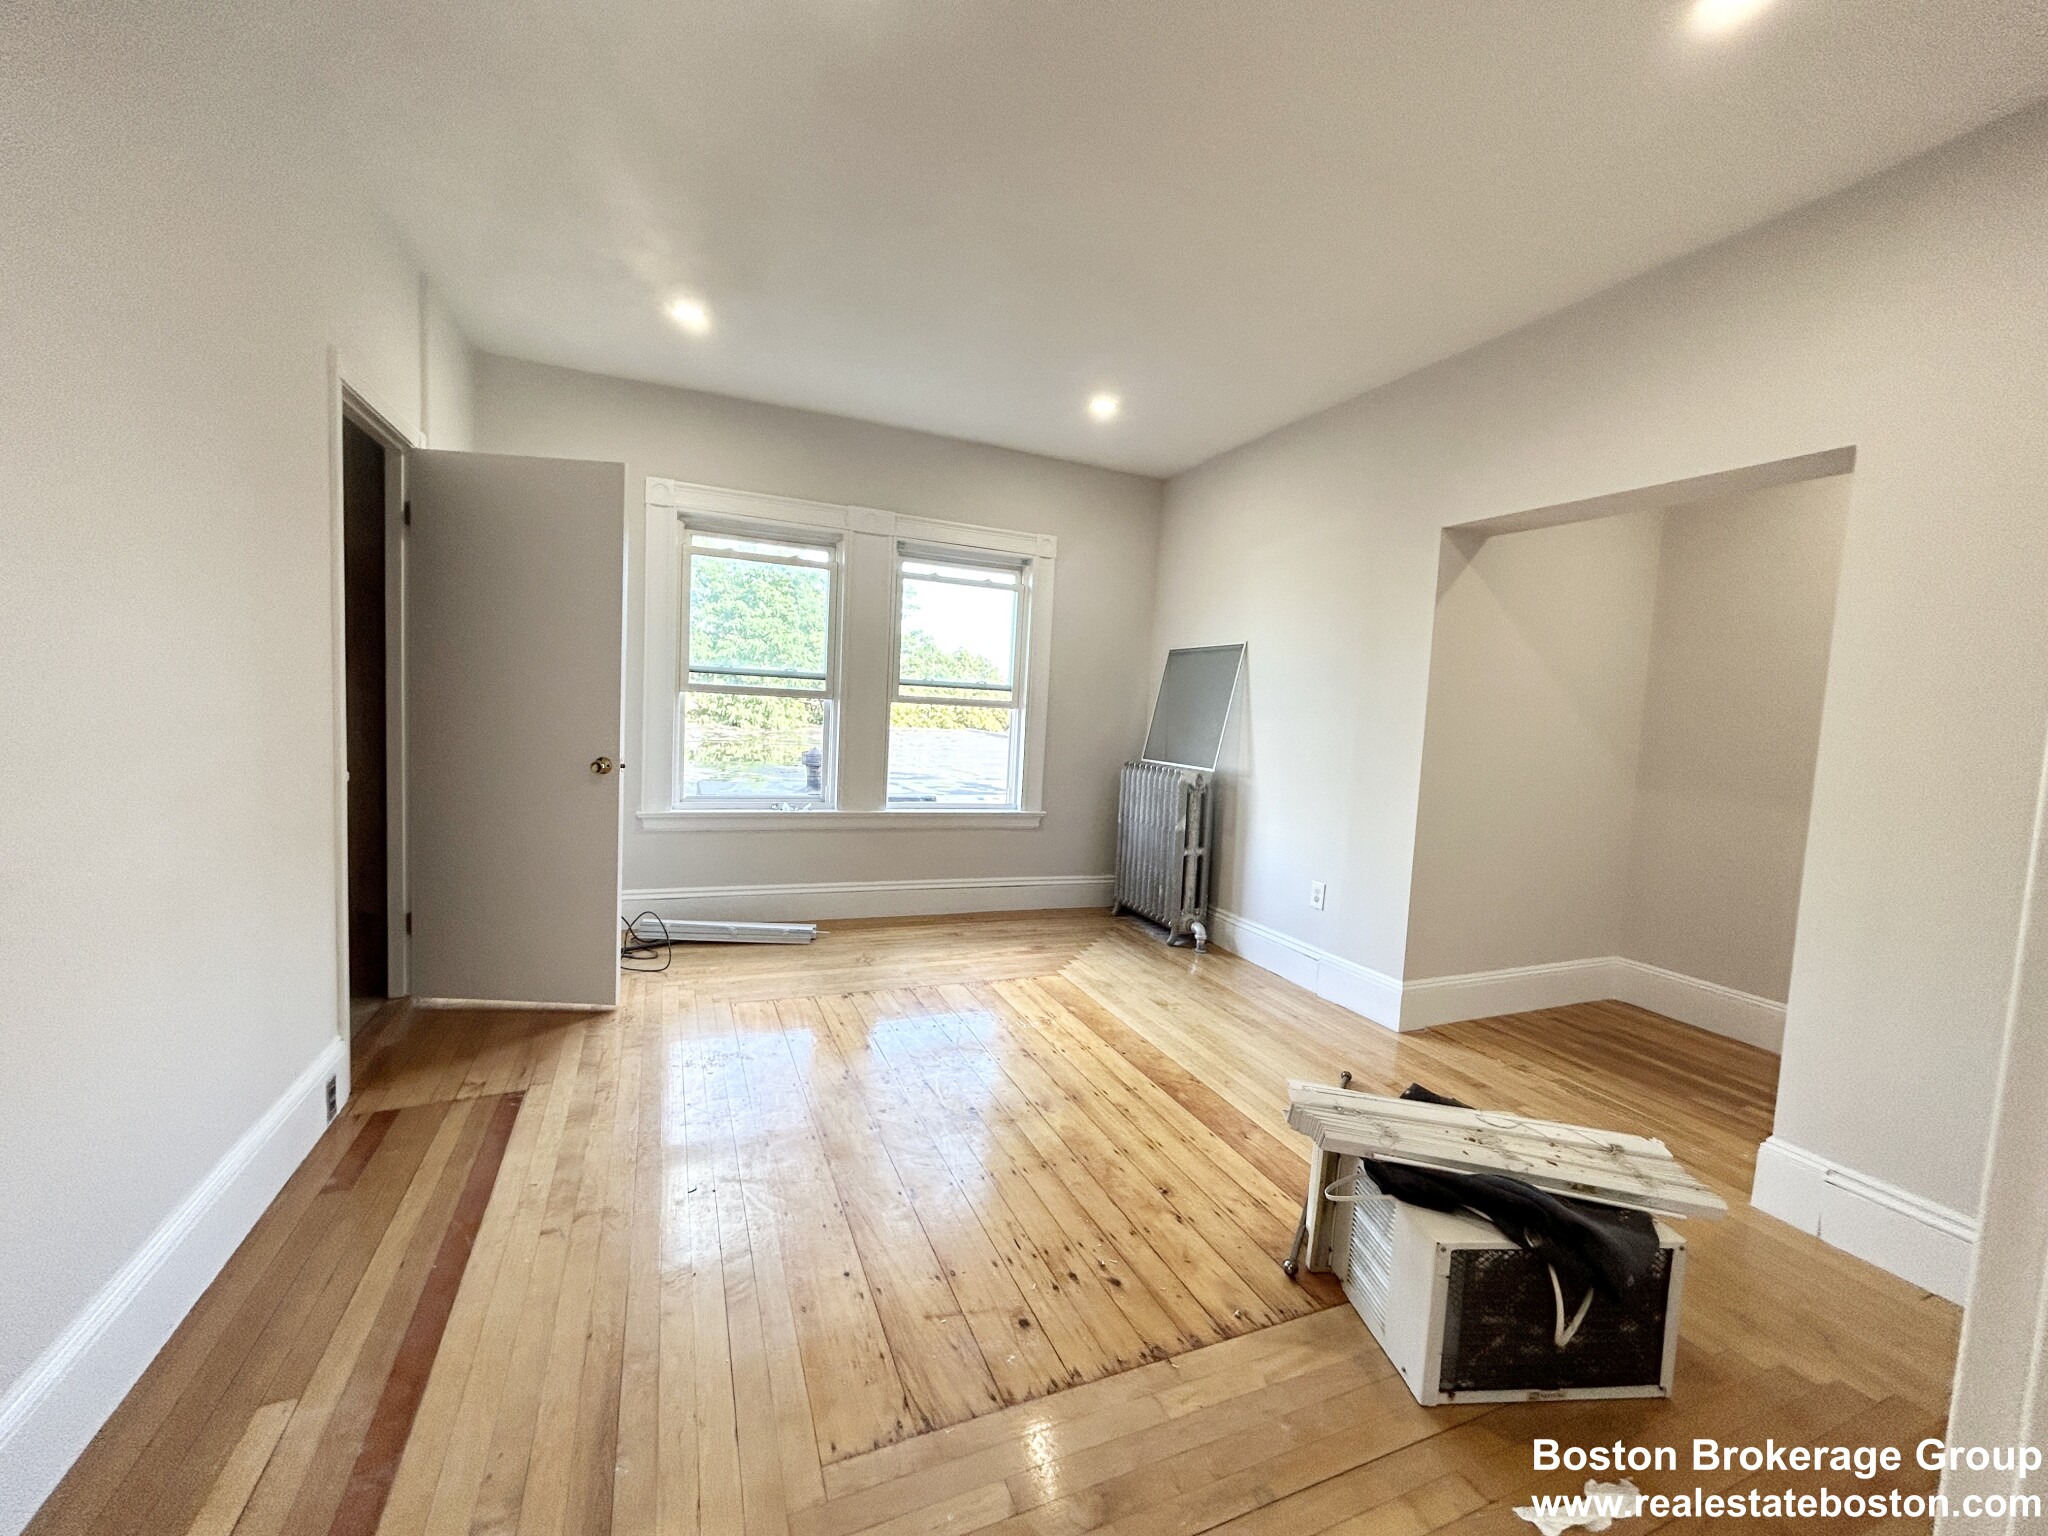 Photos of apartment on Mount Vernon St.,Boston MA 02125